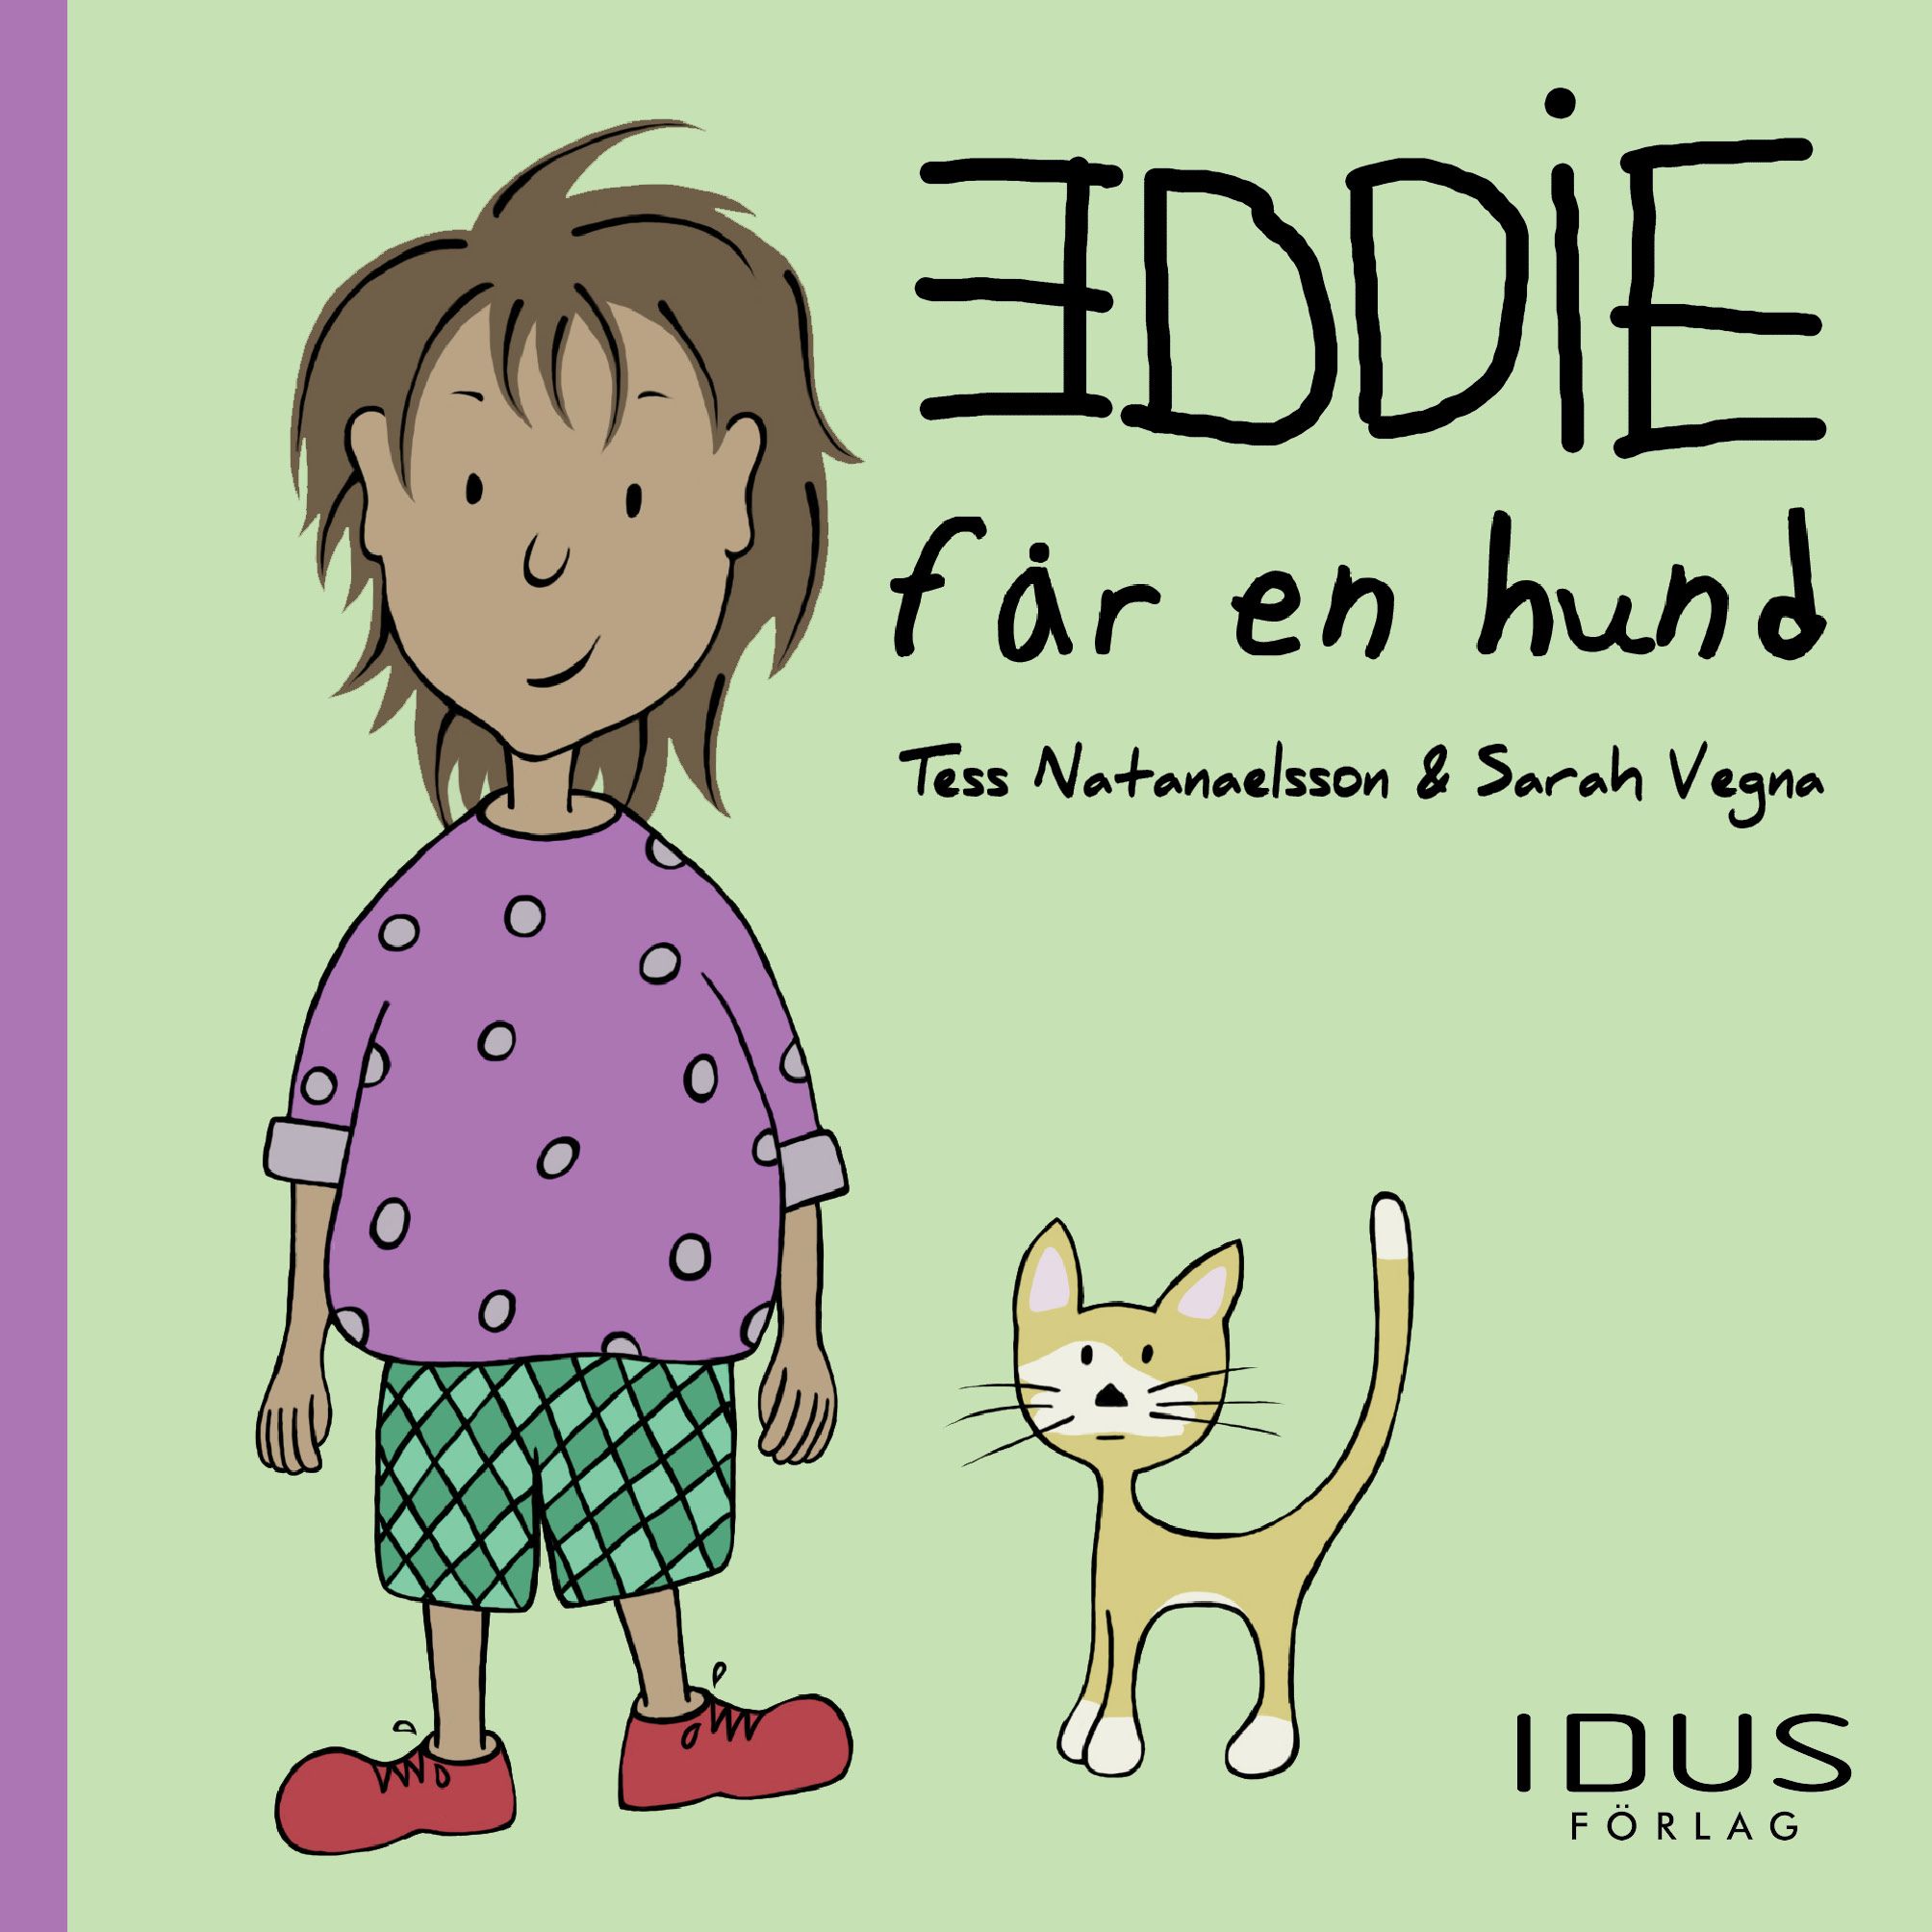 Eddie får en hund, e-bog af Tess Natanaelsson, Sarah Vegna